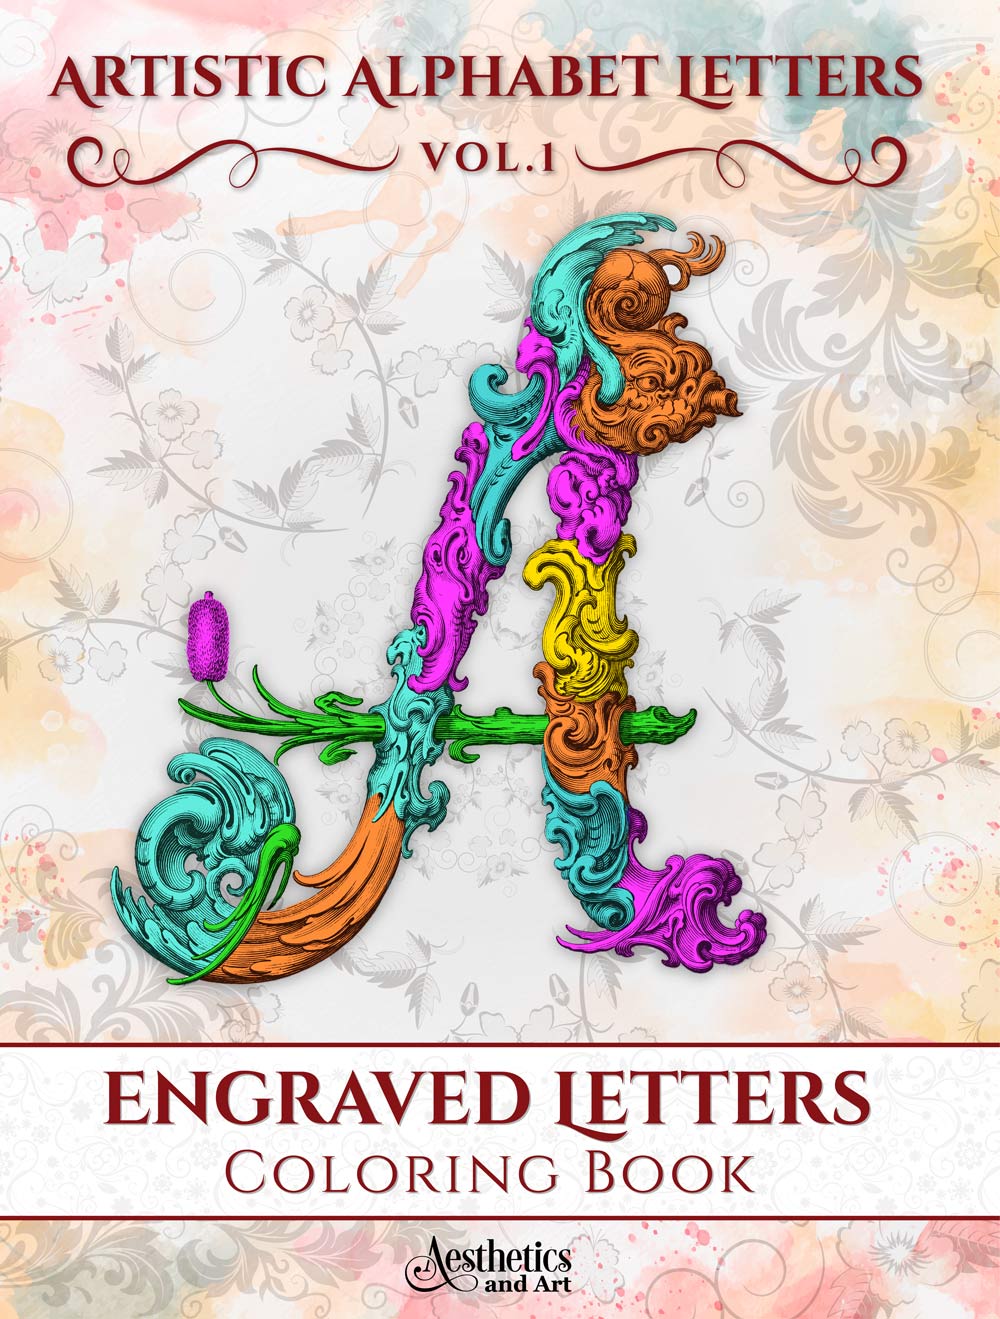 Εngraved Letters Coloring Book - Artistic Alphabet VOL.1